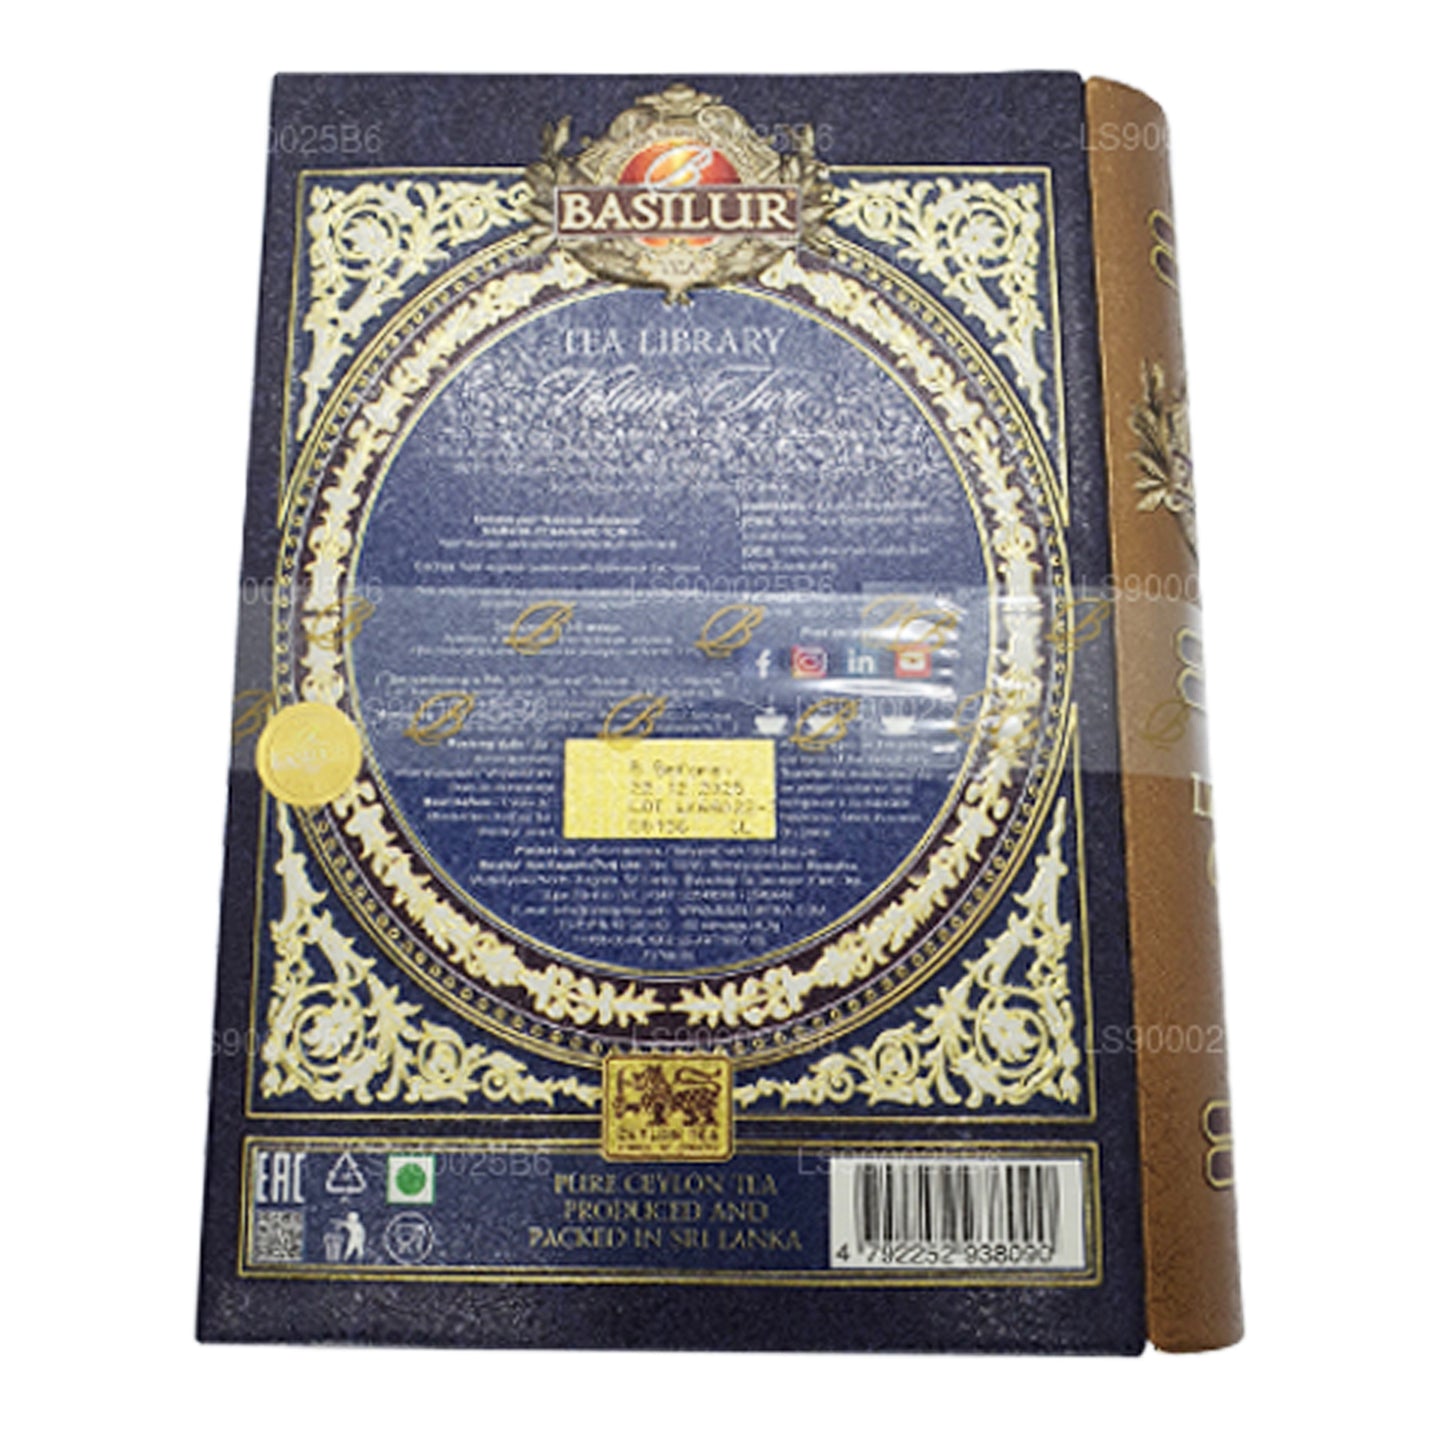 Livre de thé Basilur « Tea Library Volume Two » (100 g) Caddy